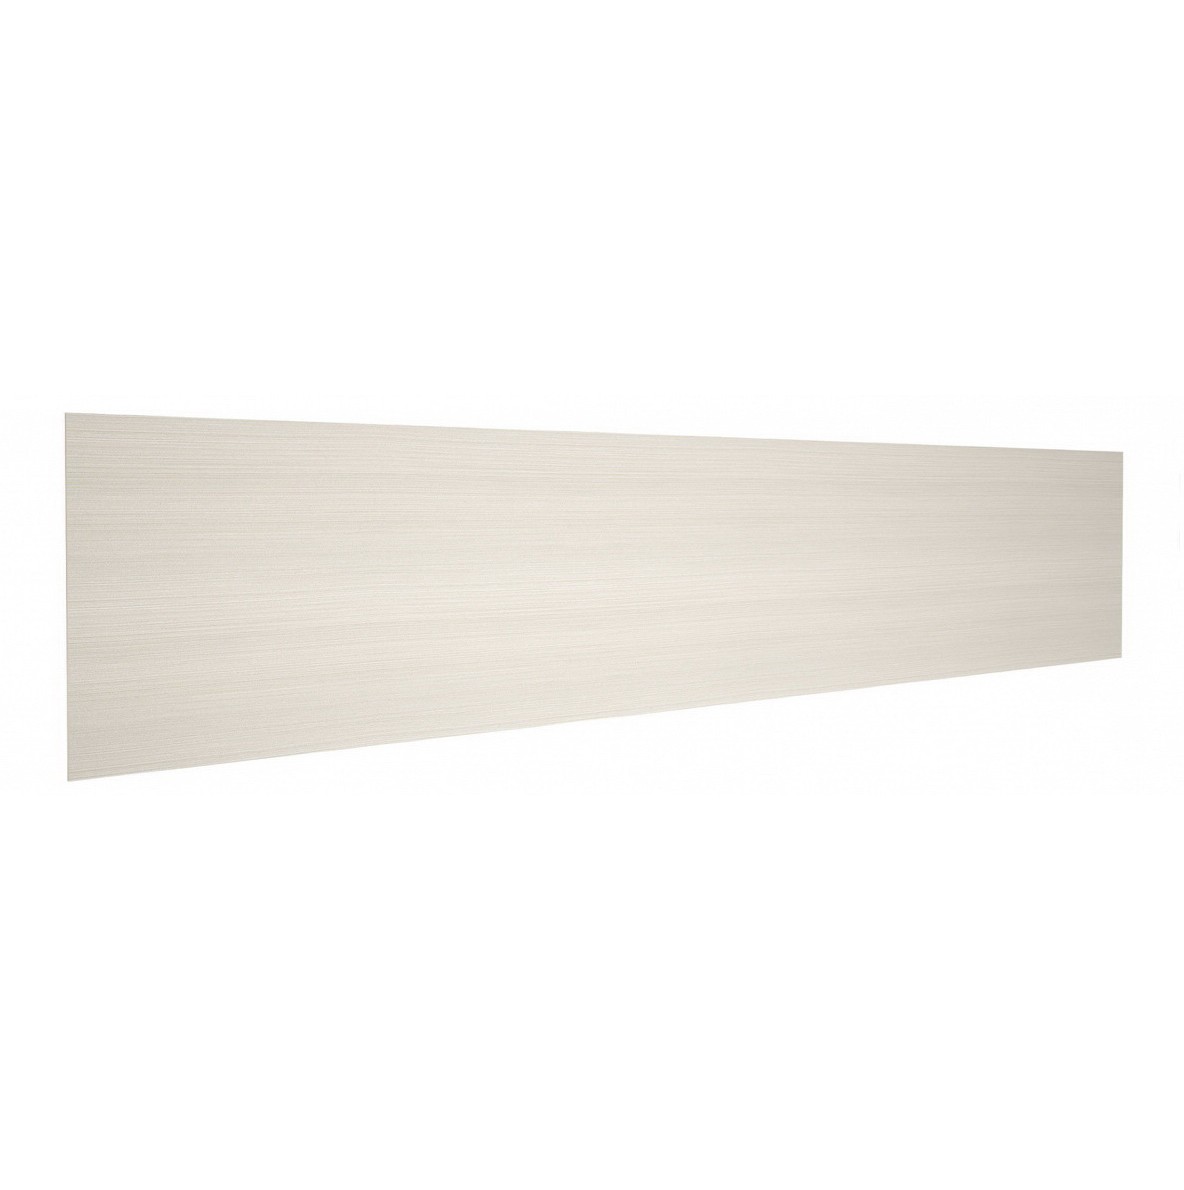 Стеновая панель для кухни кедр (1-я категория) - цвет: Редондо 7461/